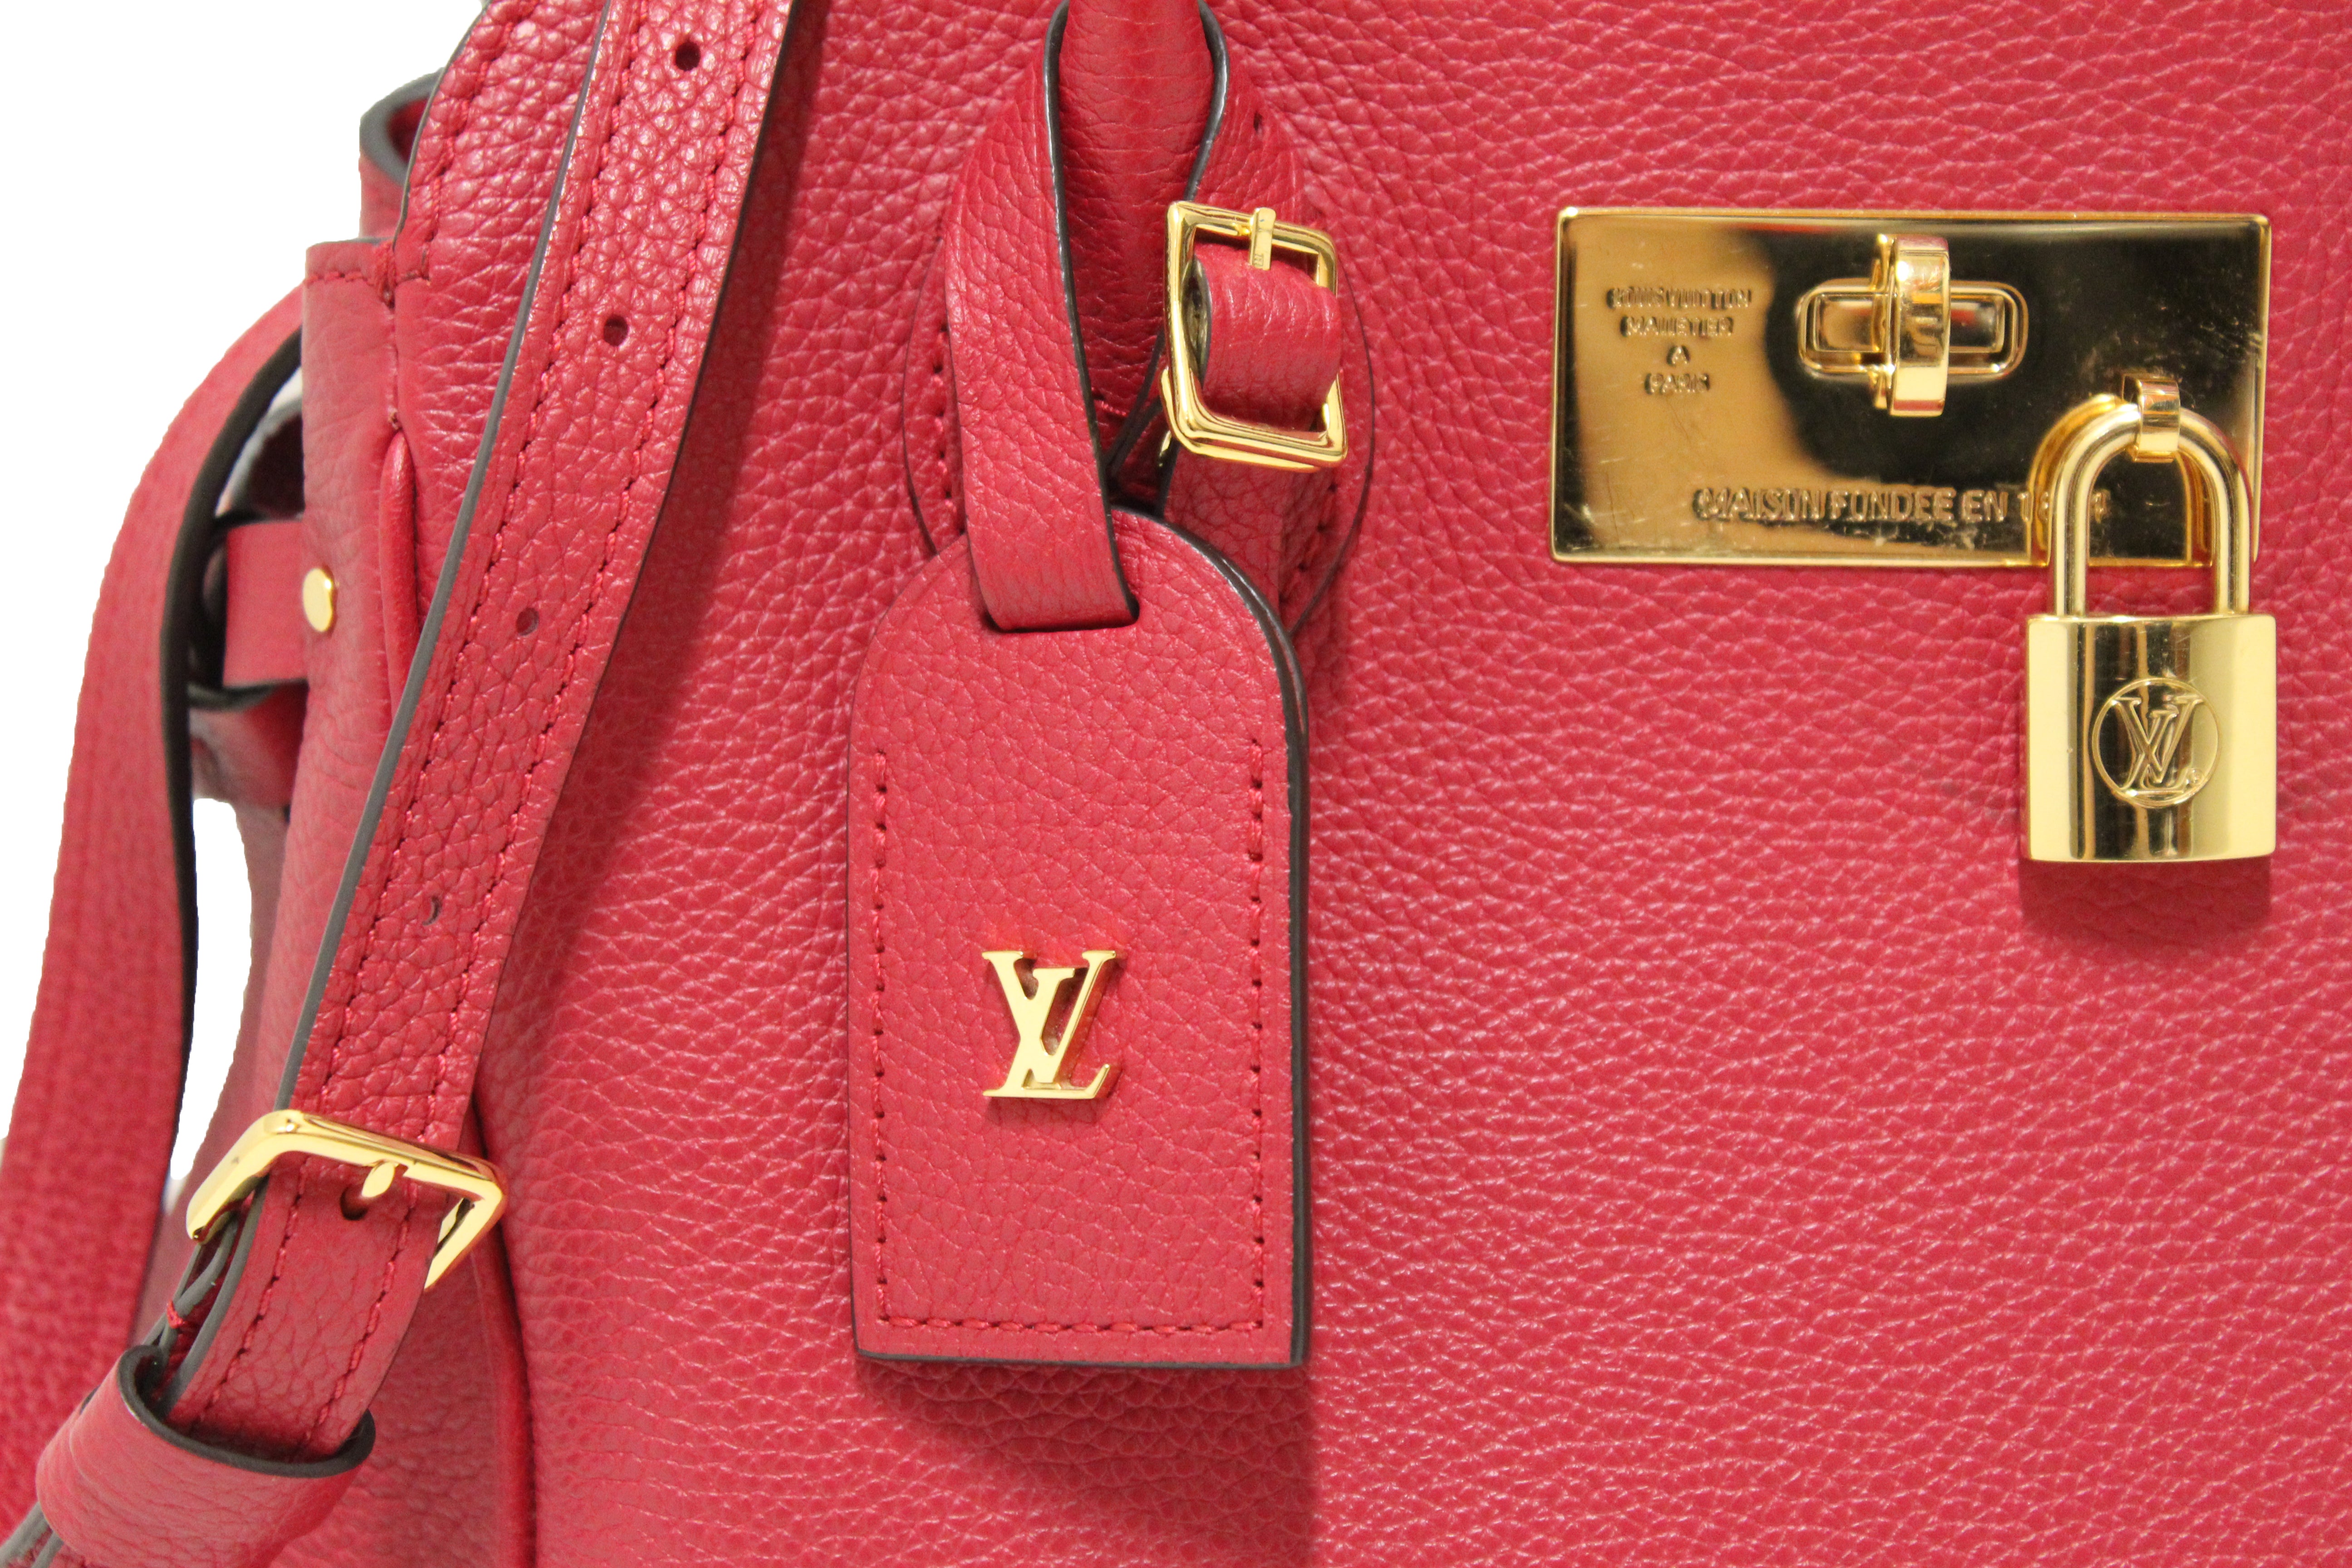 LOUIS VUITTON Authentic Red W Veau PM Cashmere Leather Tote Handbag FL1114